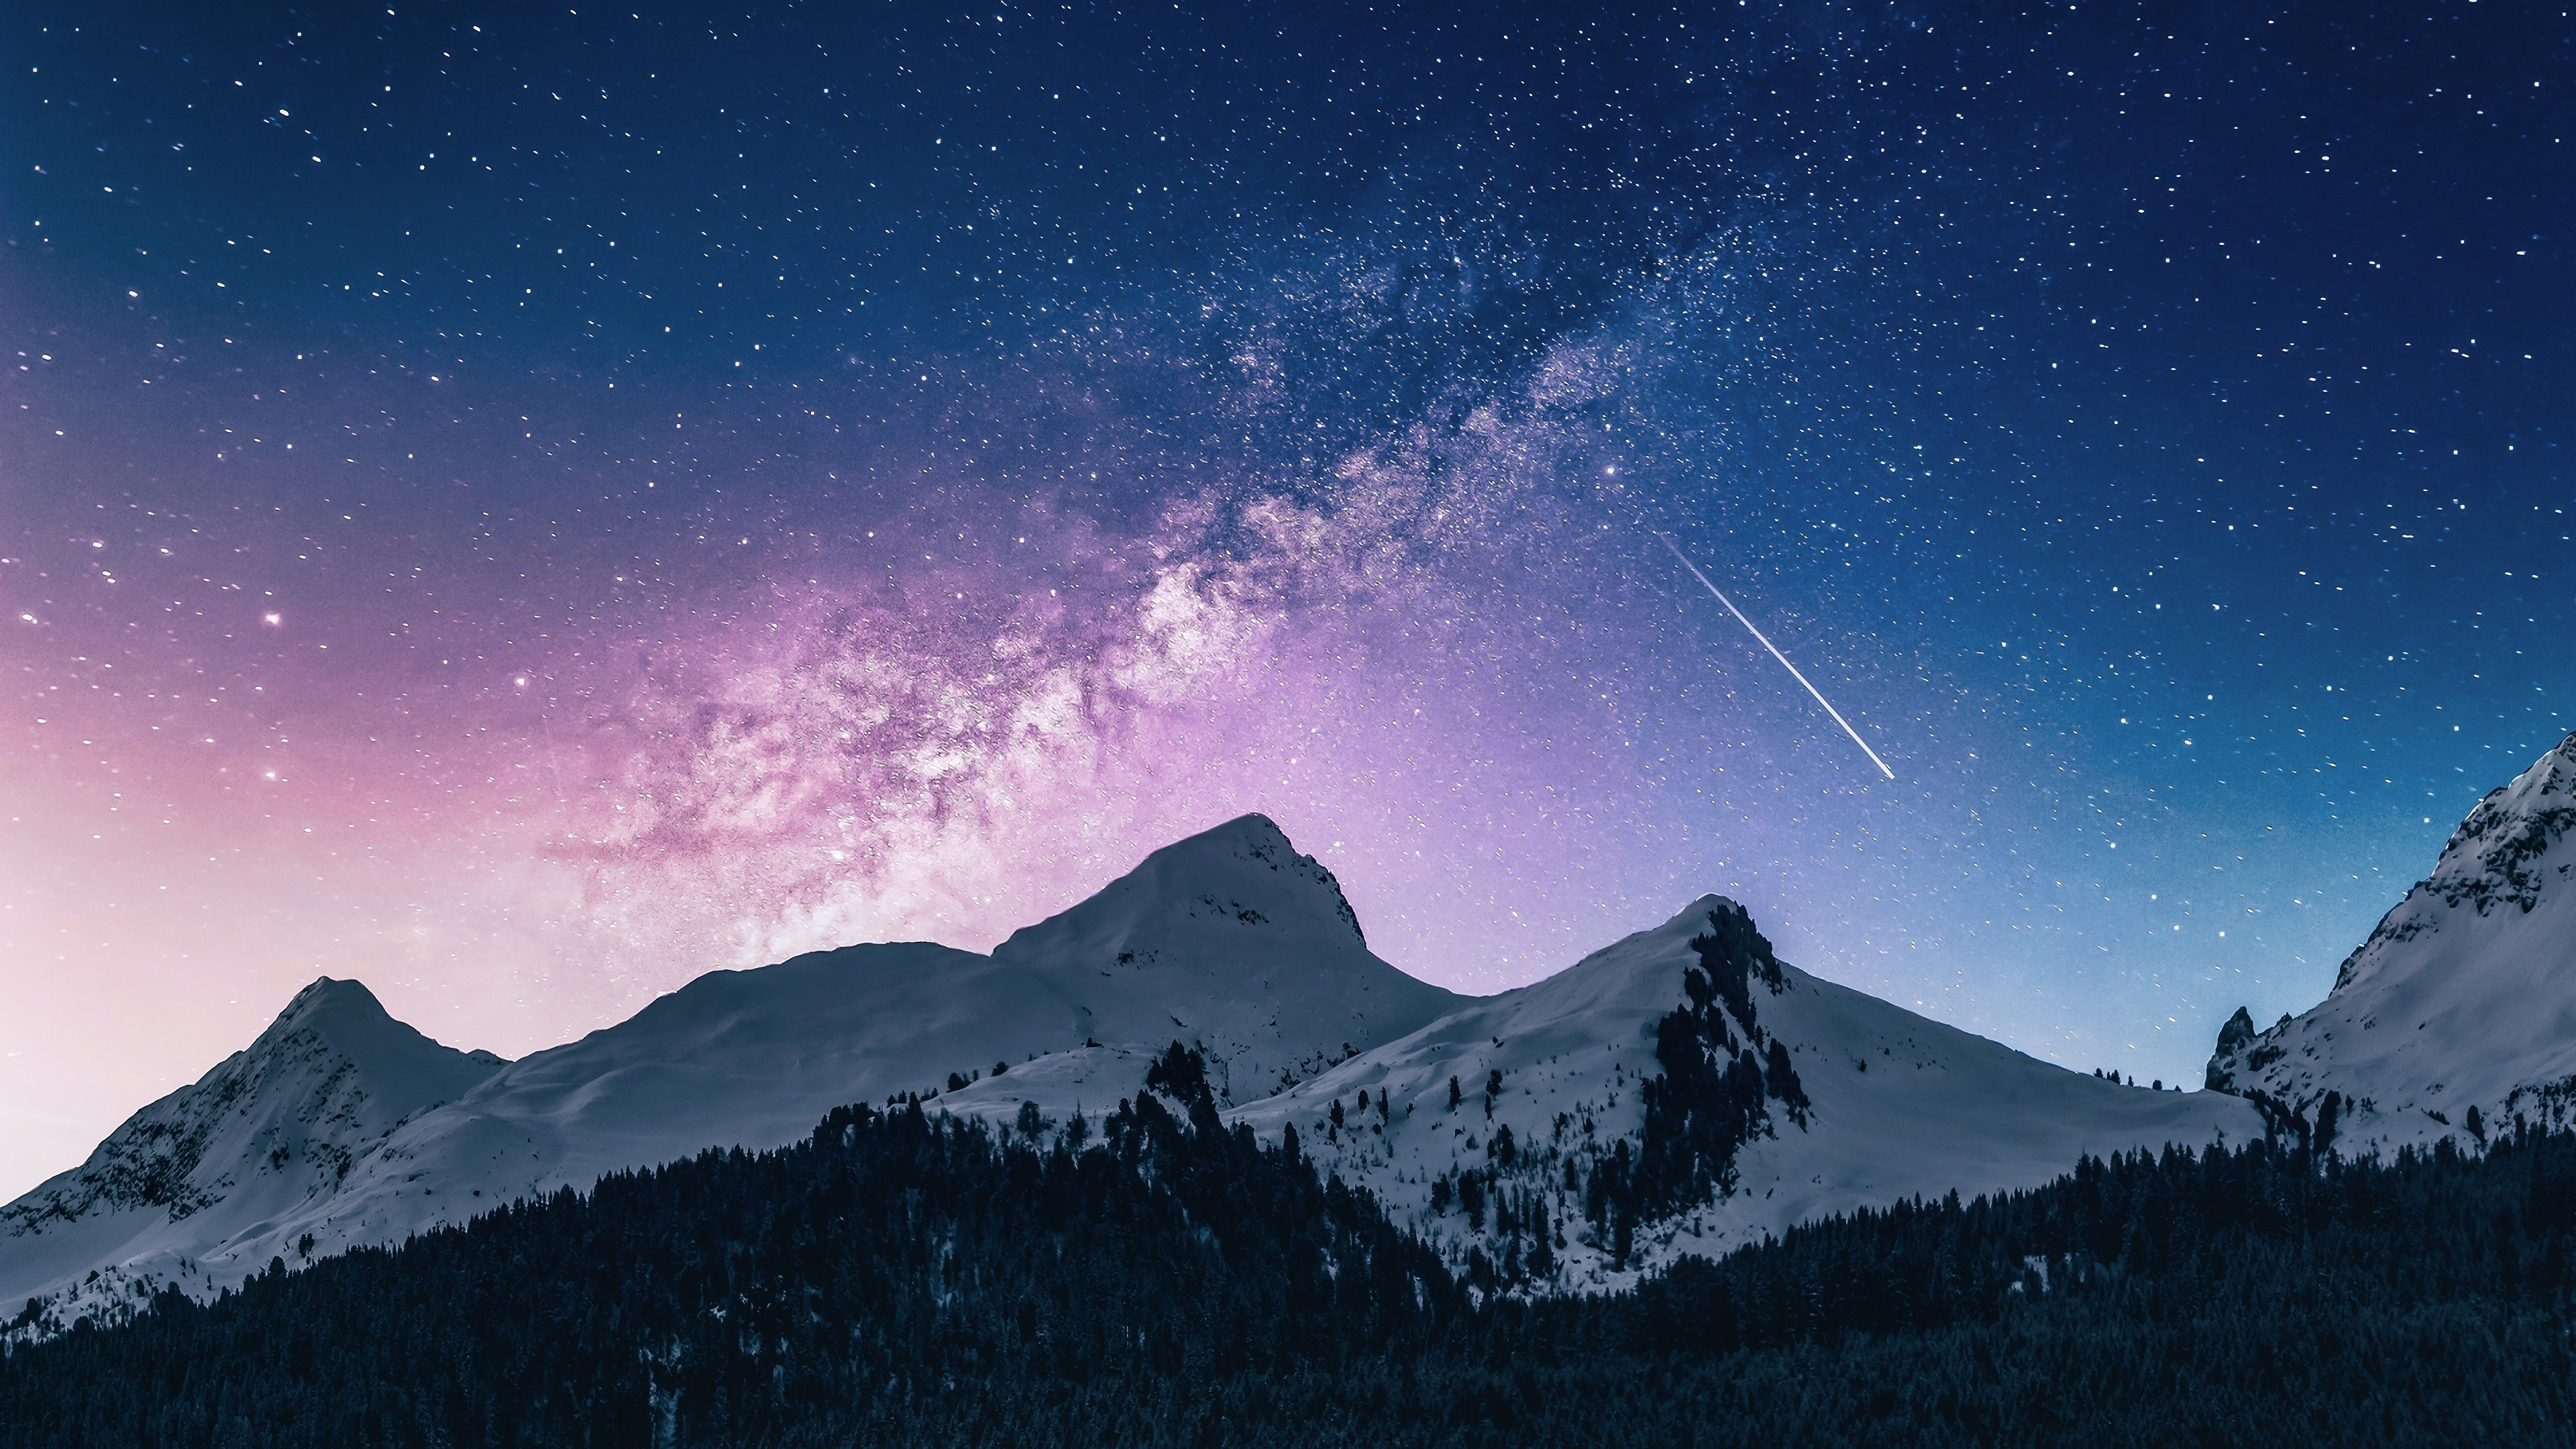 Fondos de pantalla Montañas nevadas cielo con estrellas y cometa